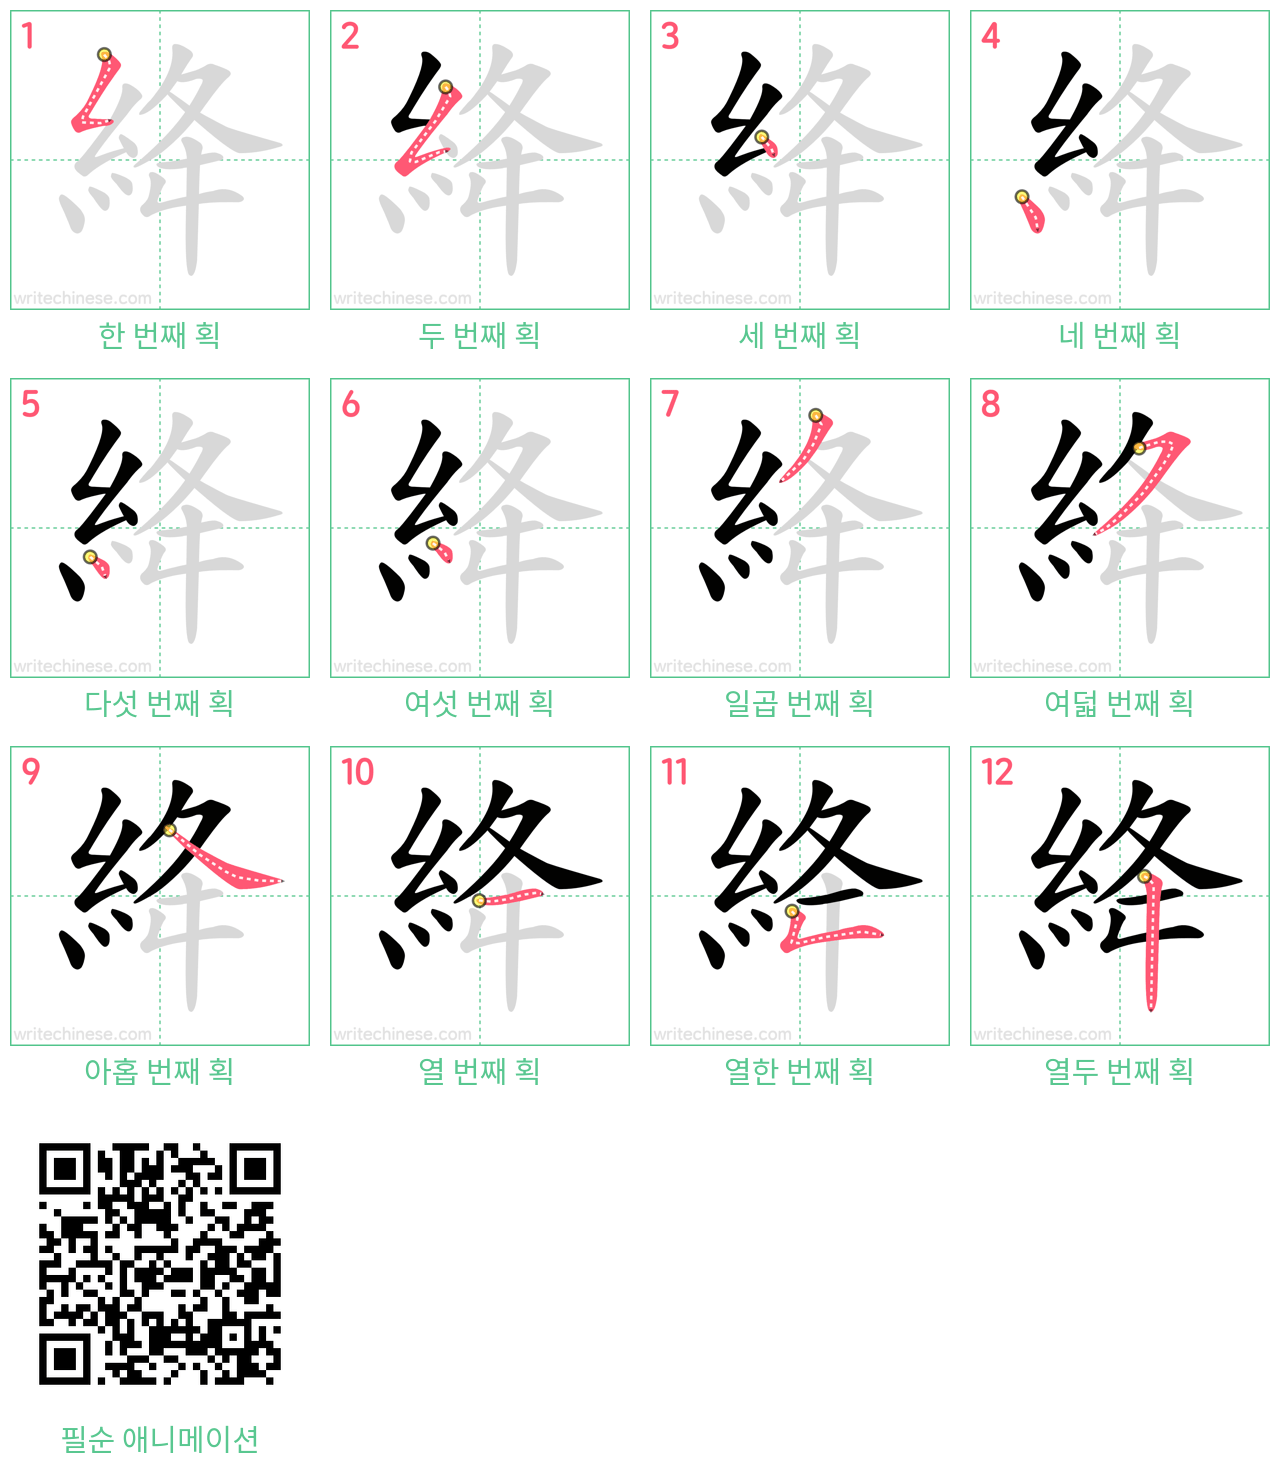 絳 step-by-step stroke order diagrams